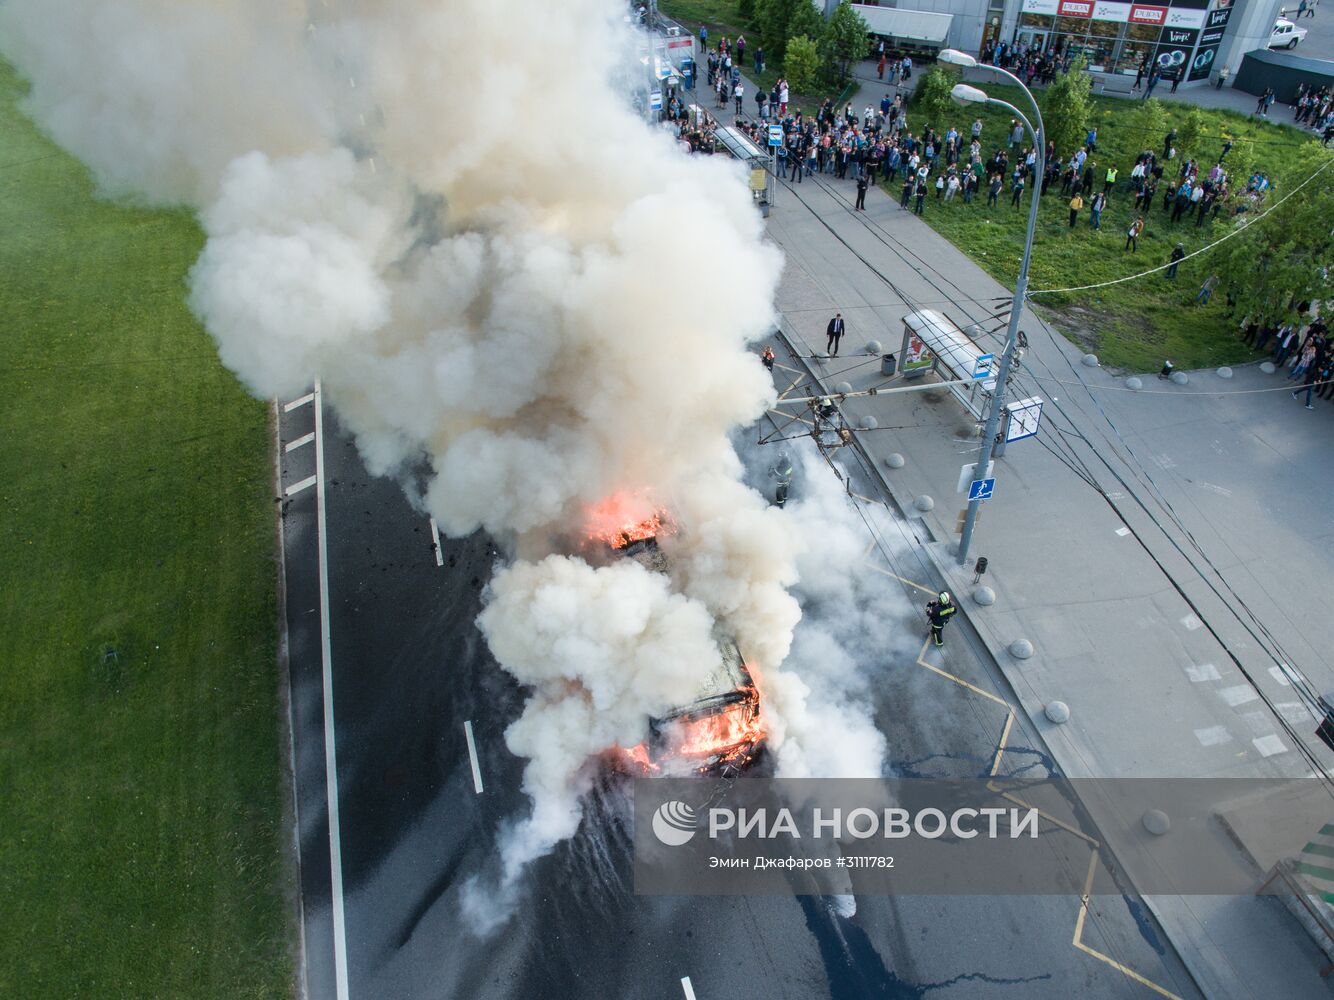 У станции метро "Юго-Западная" в Москве сгорел автобус